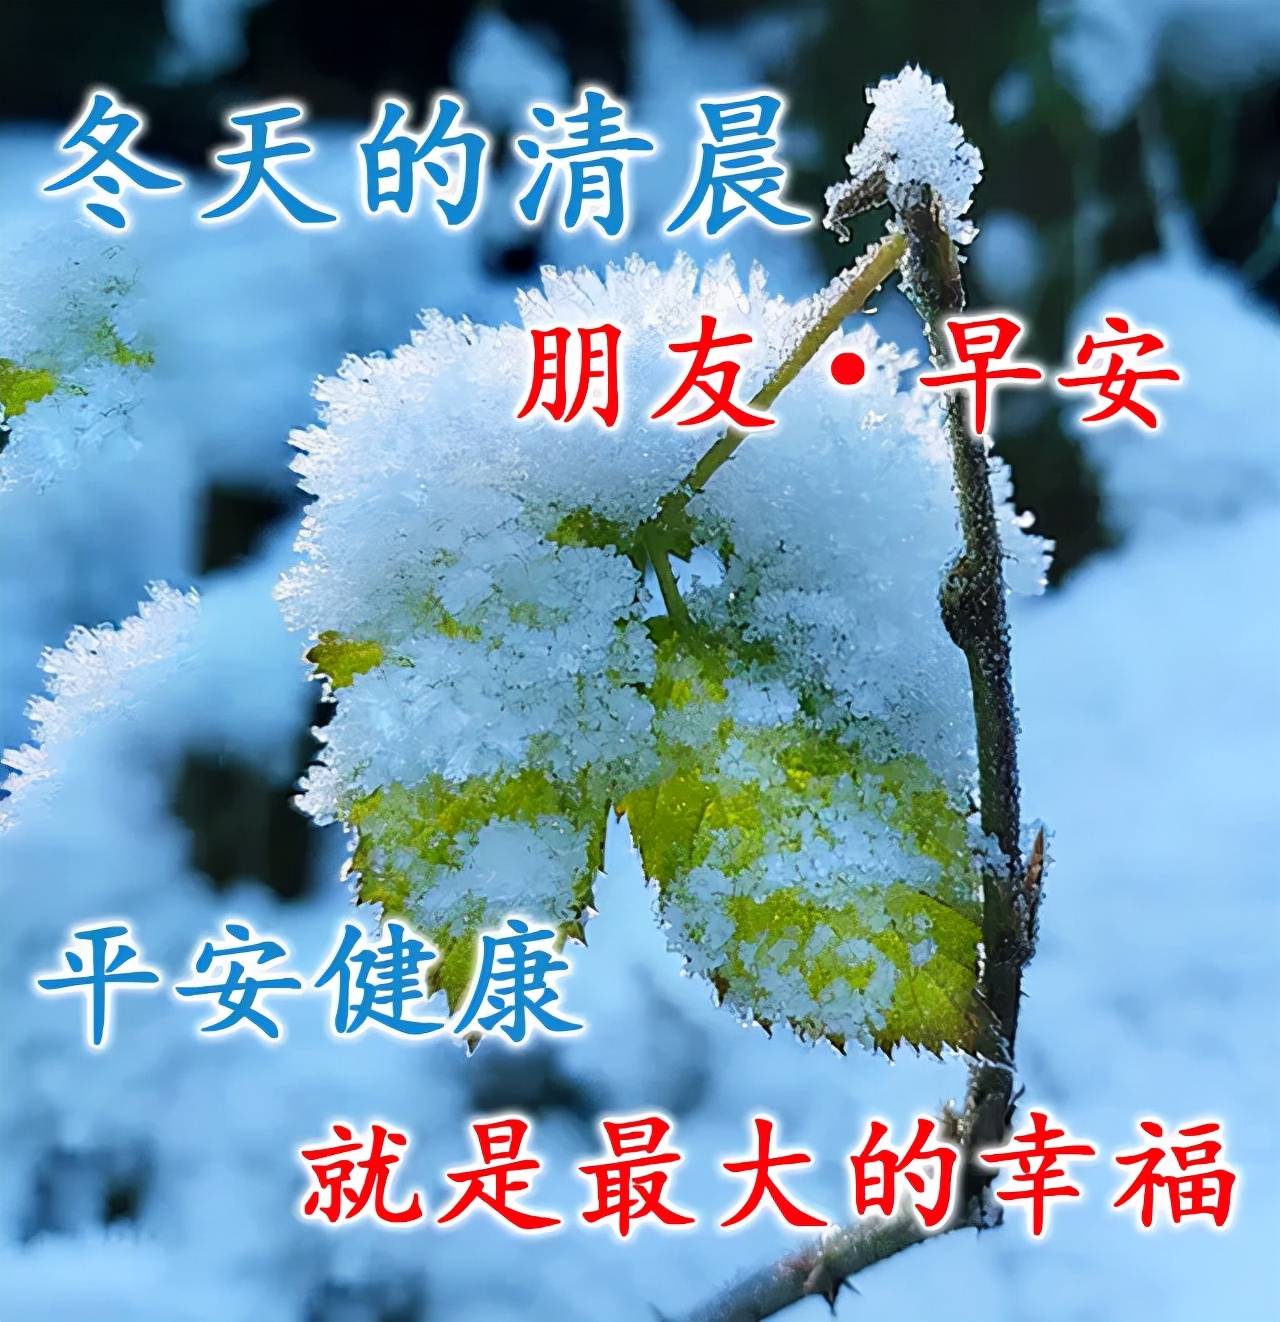 入冬的祝福语图片图片